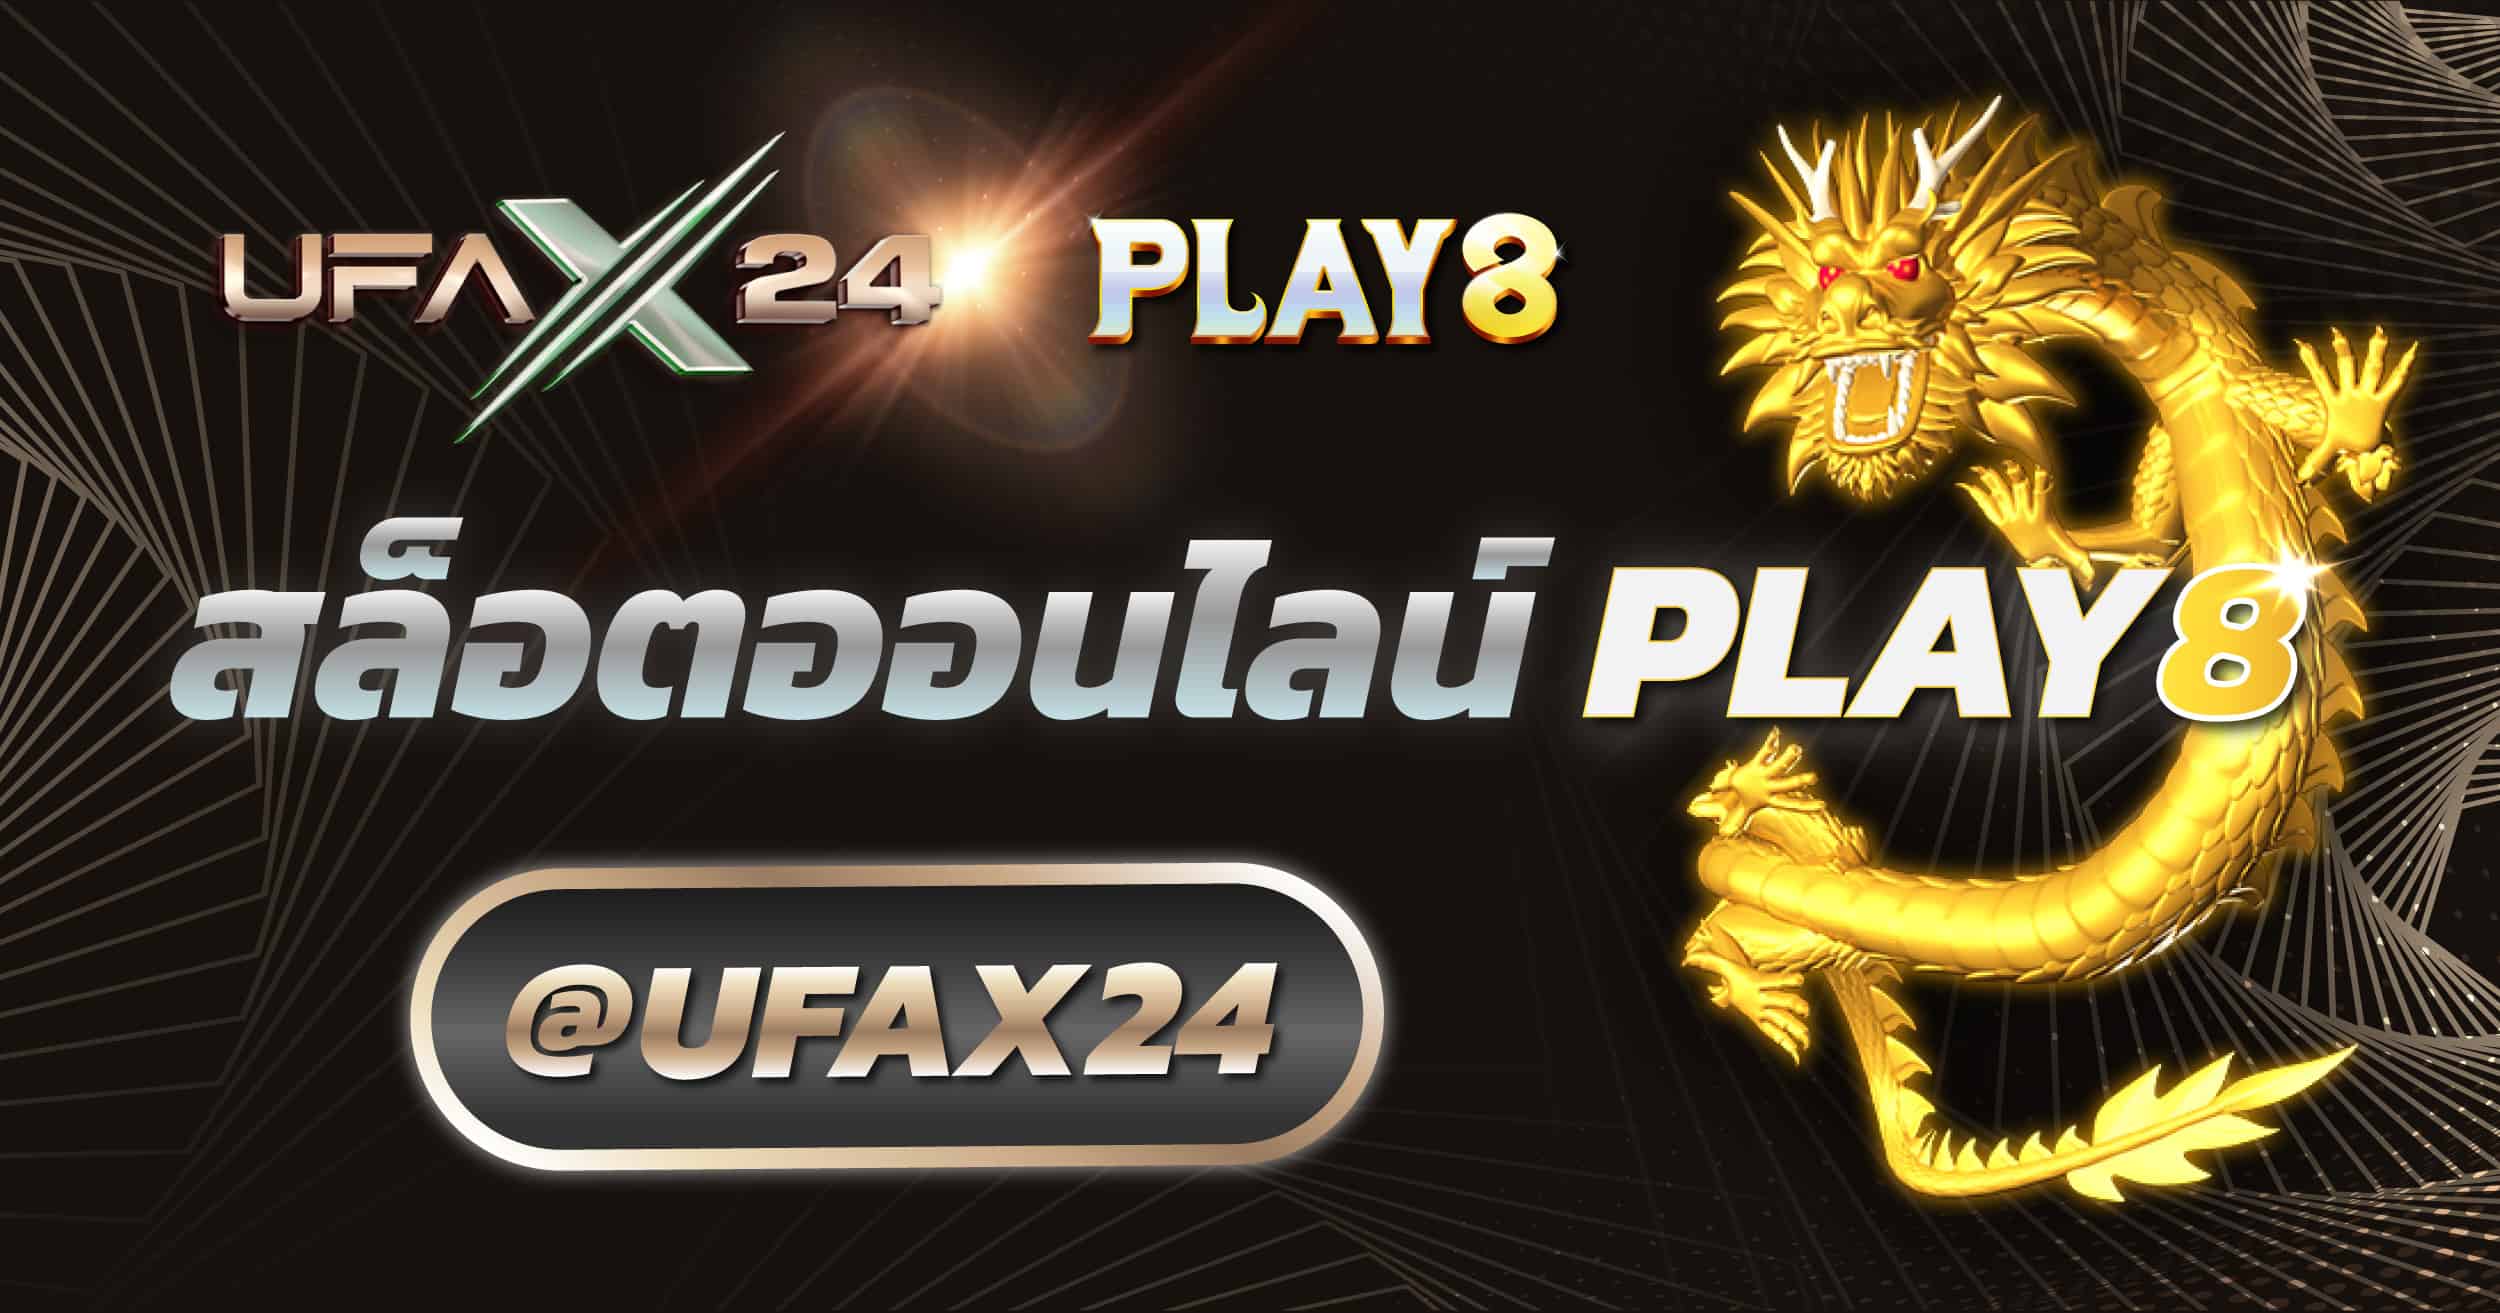 สล็อตออนไลน์ Play8 ufax24 เว็บแทงบอล แทงบอลออนไลน์ ที่ดีที่สุด